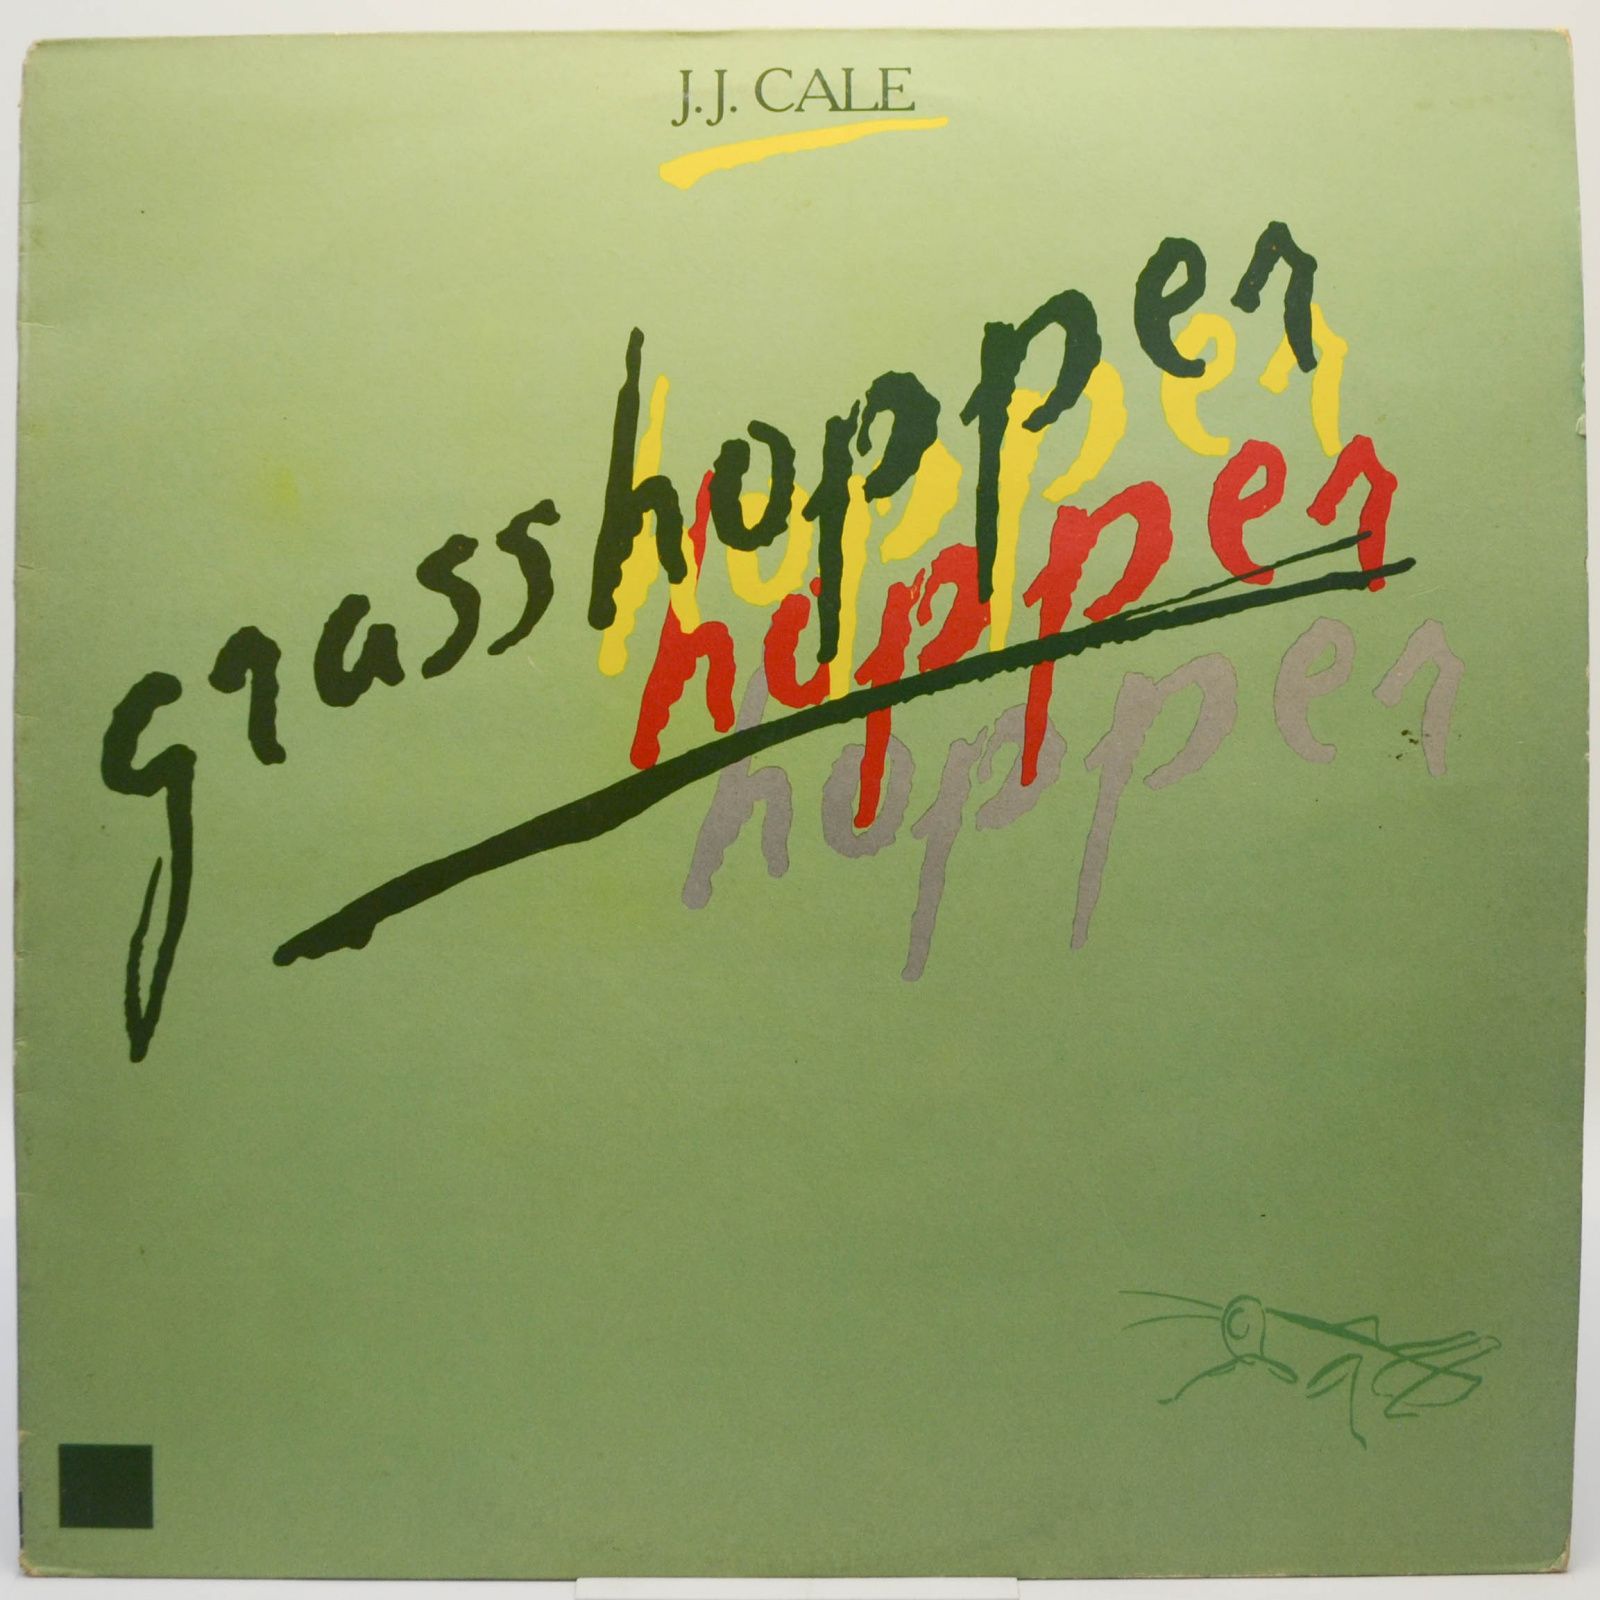 J.J. Cale — Grasshopper, 1984